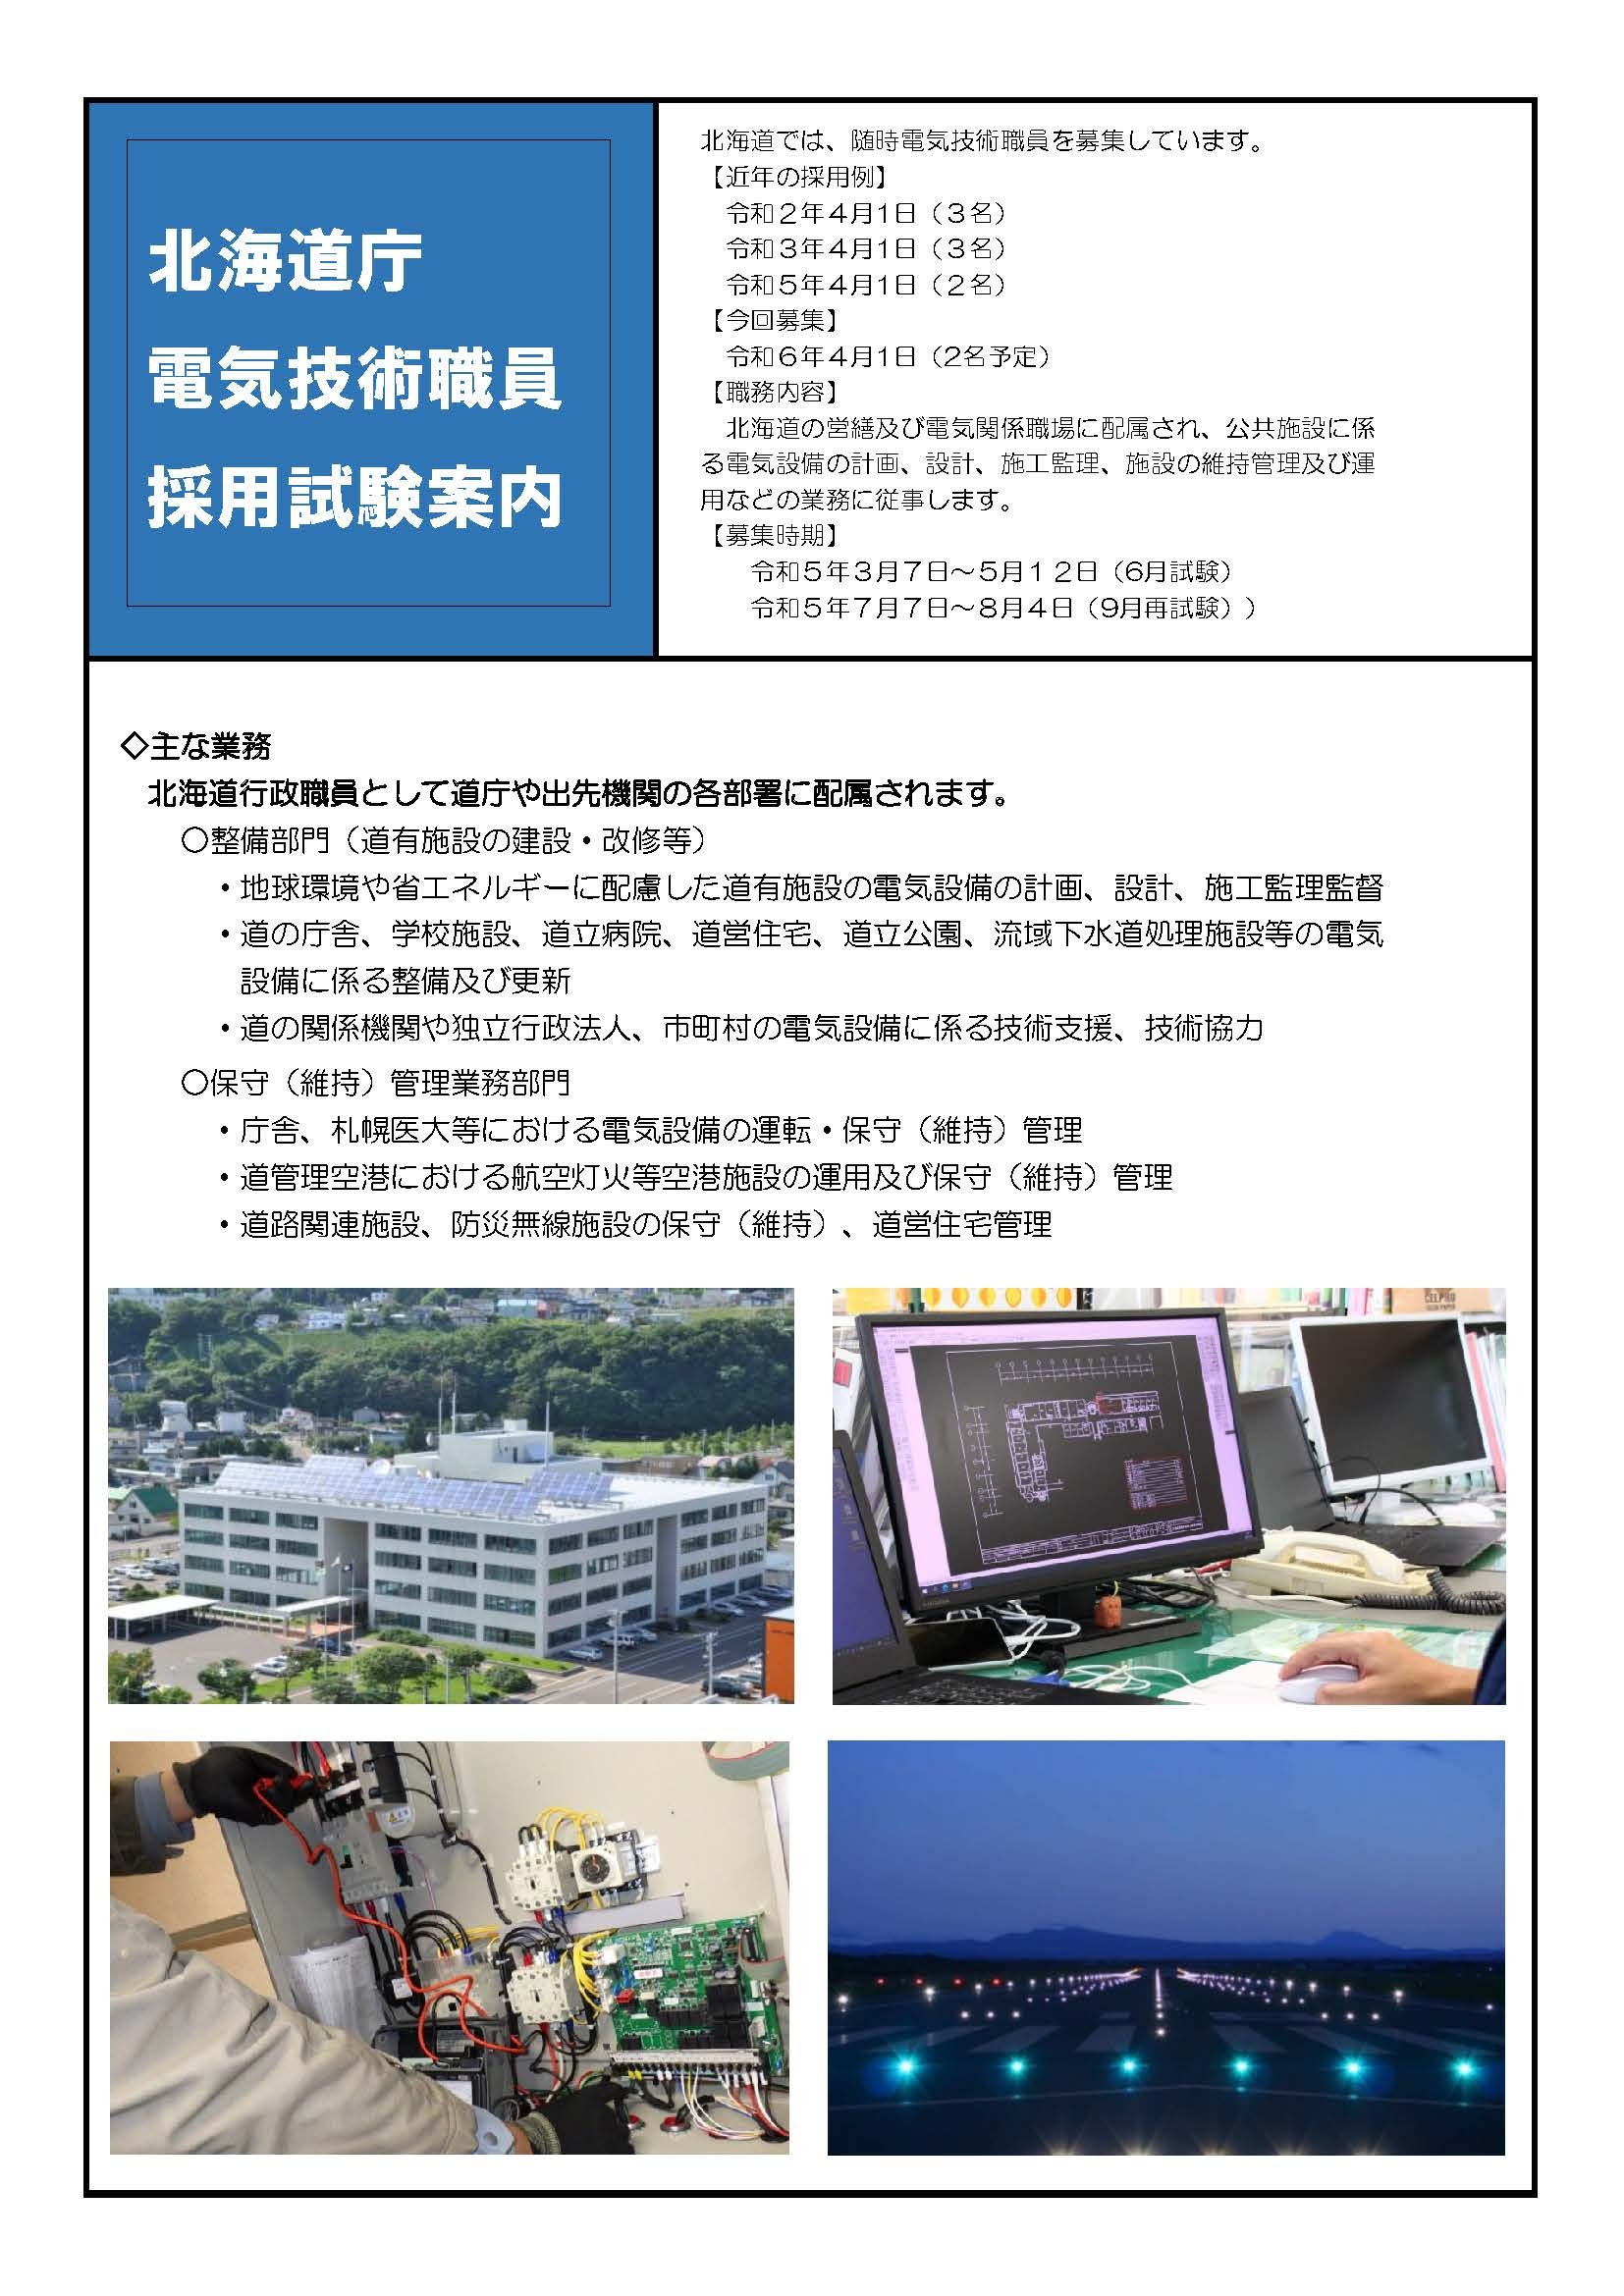 電気職員採用試験パンフレット2307 ページ_1 (JPG 526KB)